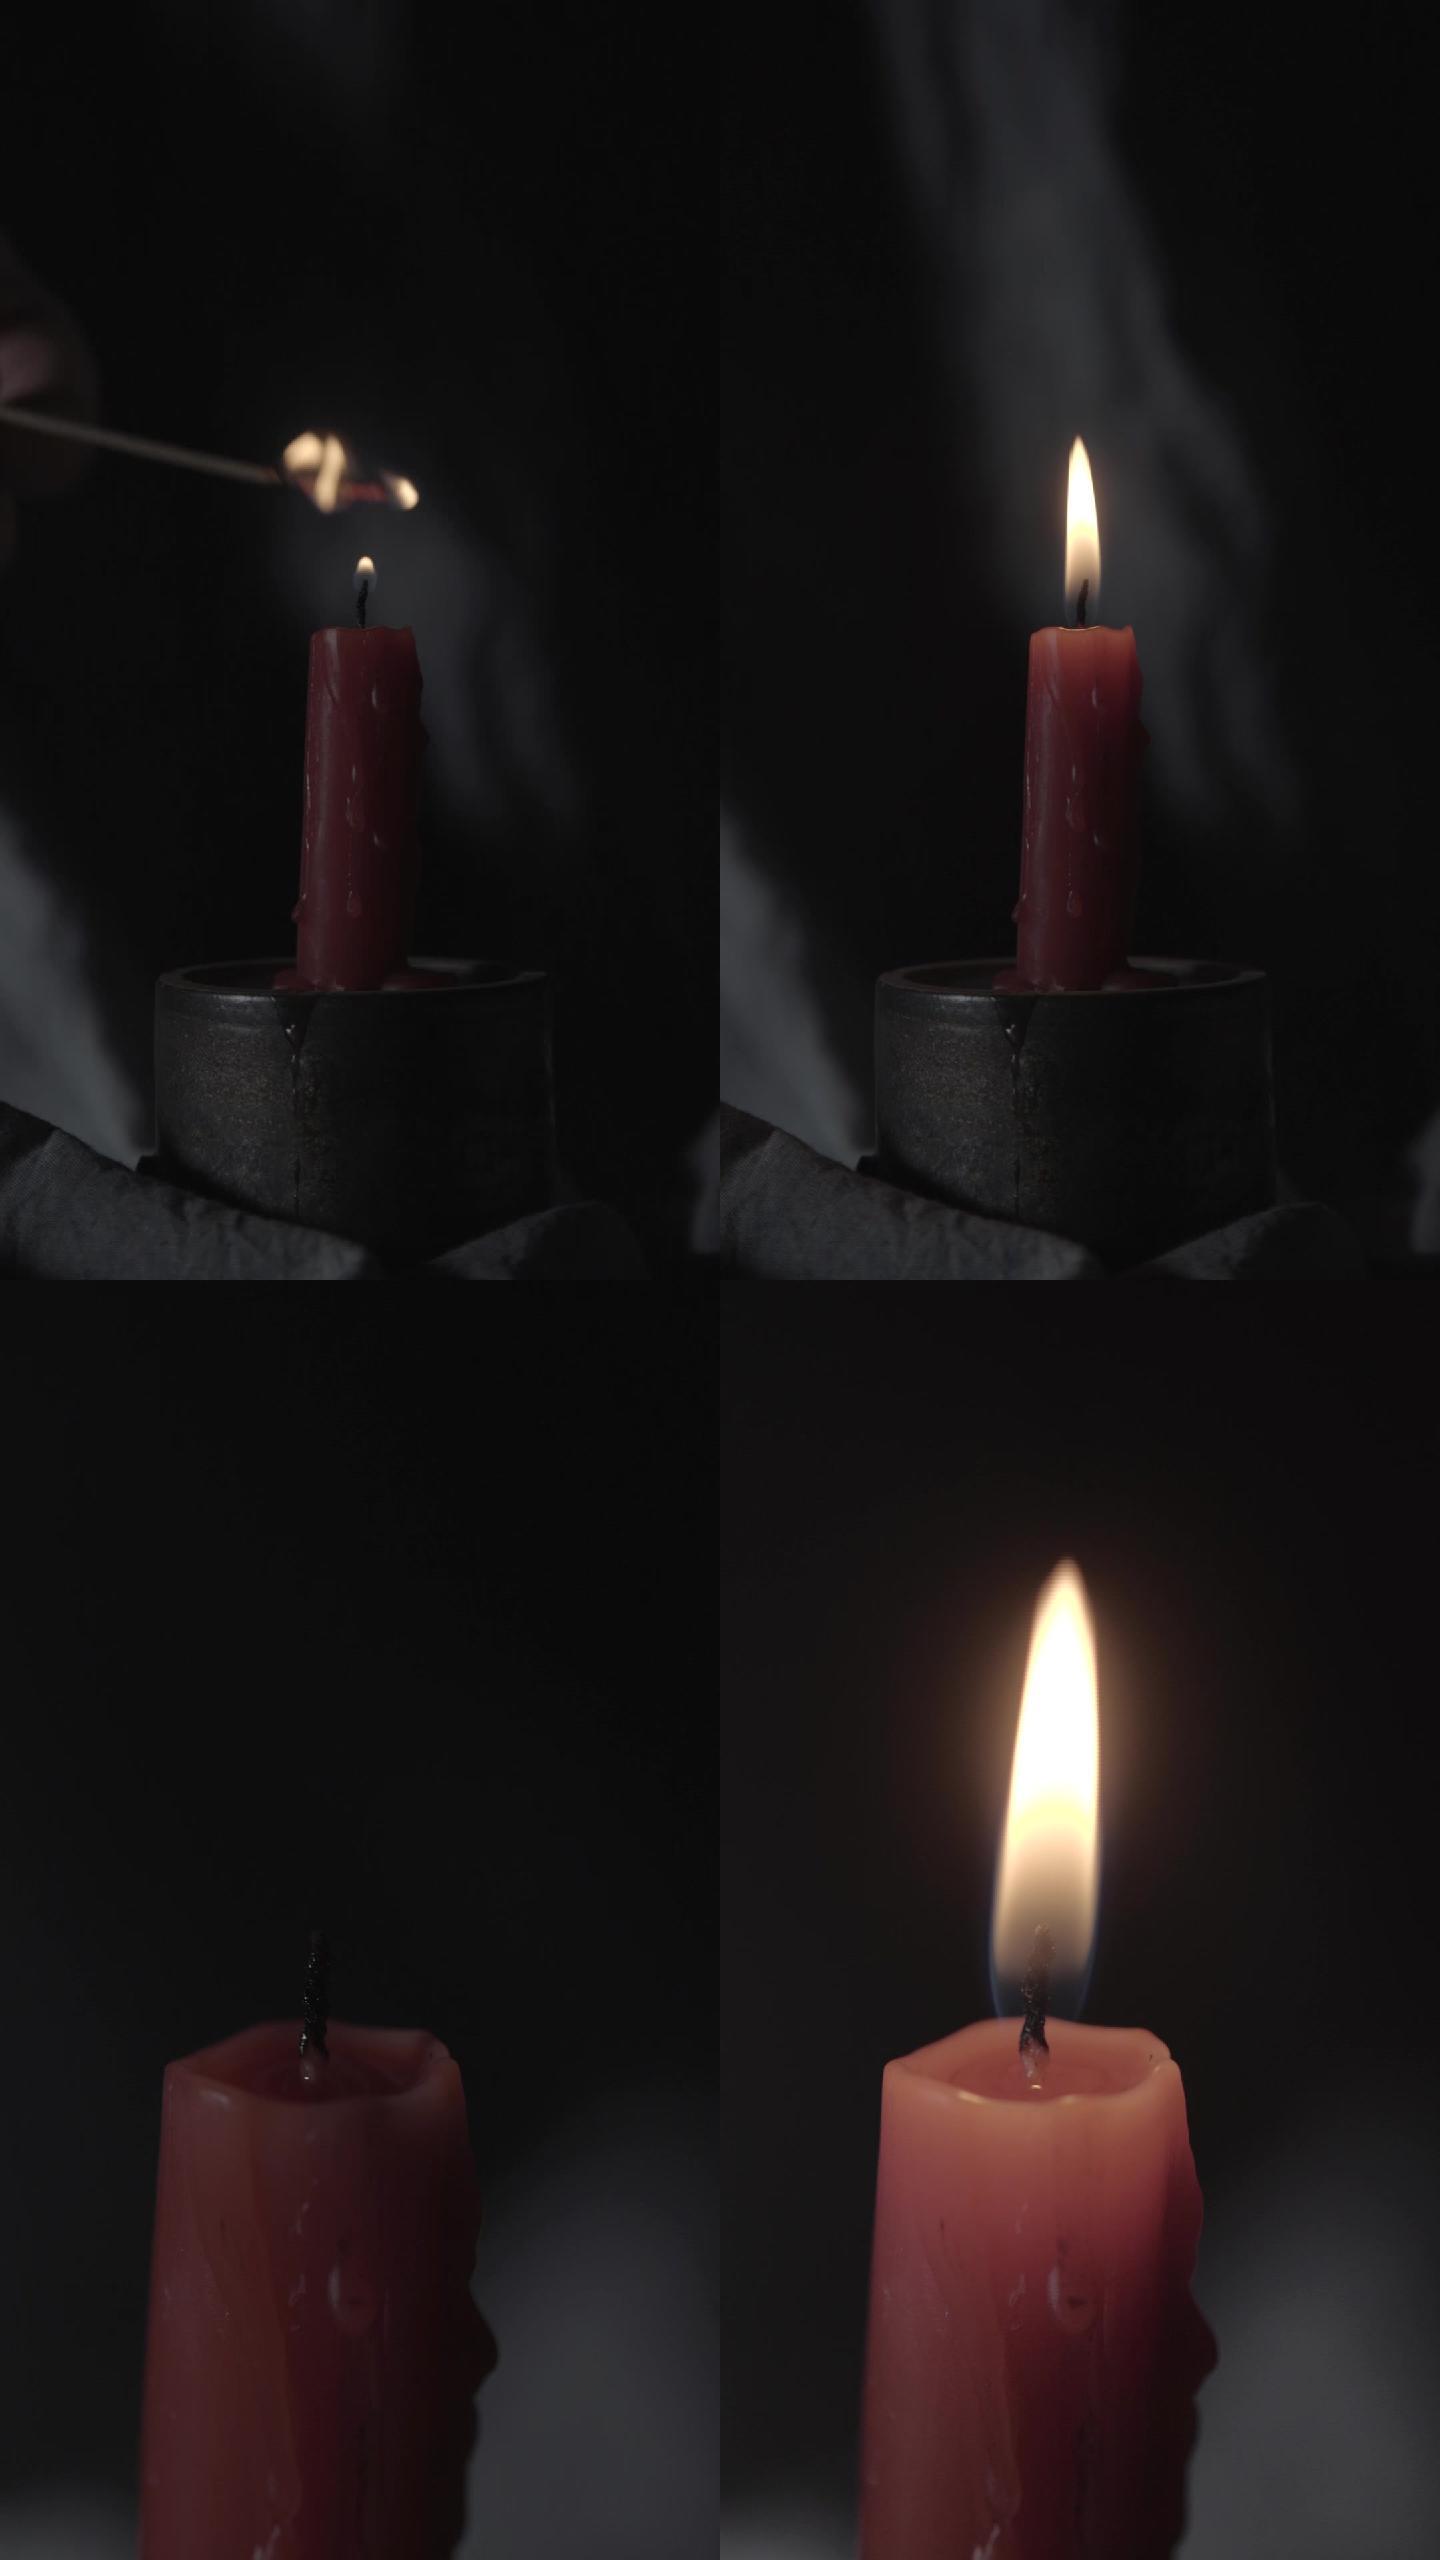 黑暗环境点蜡烛 蜡烛燃烧